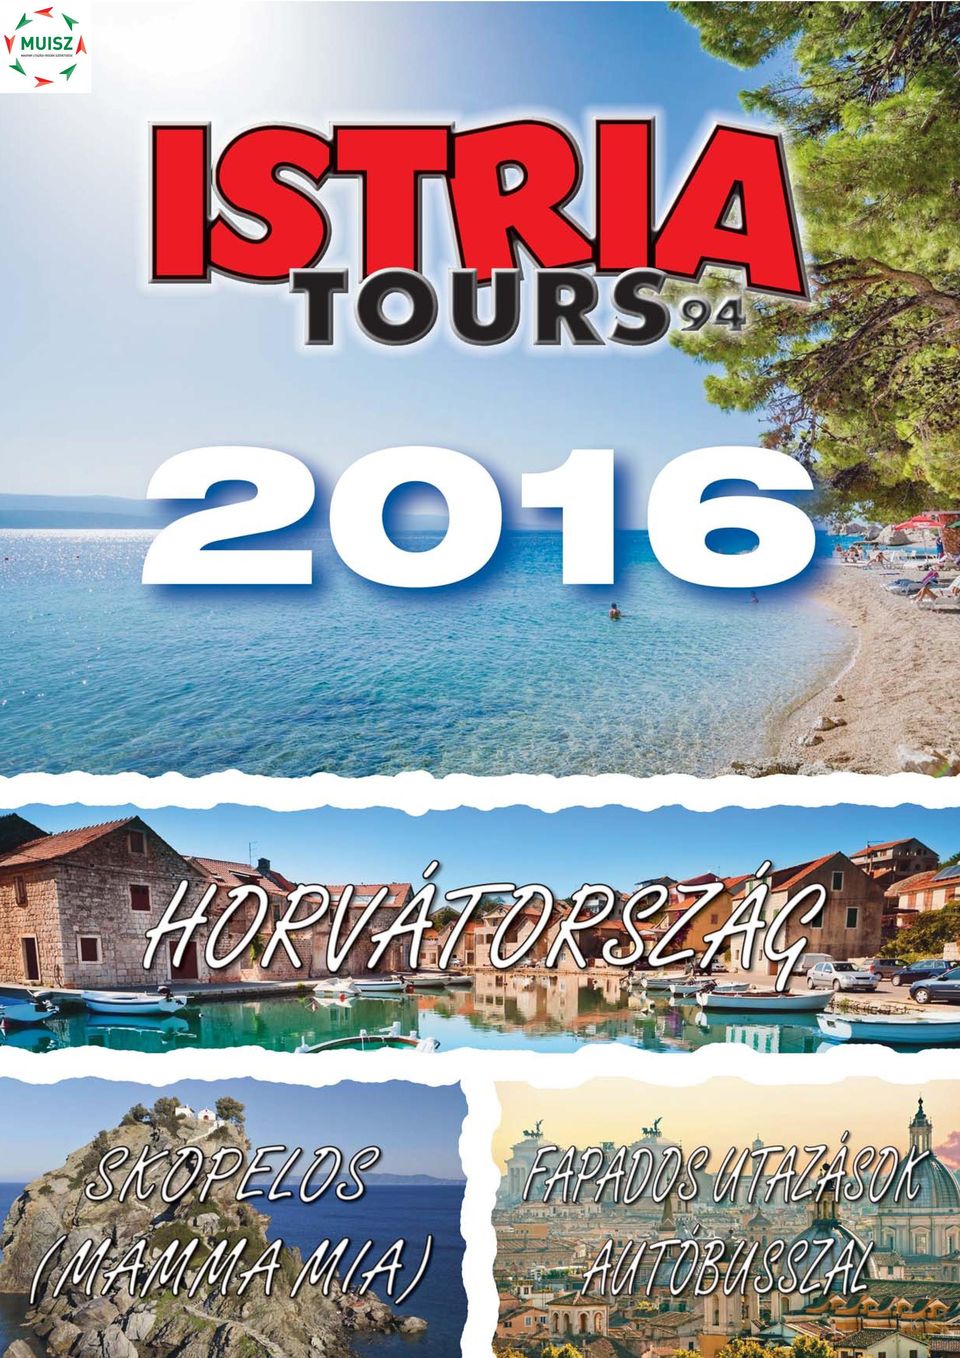 Istria Tours 94 saját magánapartman. exkluzív ajánlat! Istria Tours 94  tipp. típusapartman. nászutas. gyerekbarát. légkondícionált - PDF Ingyenes  letöltés